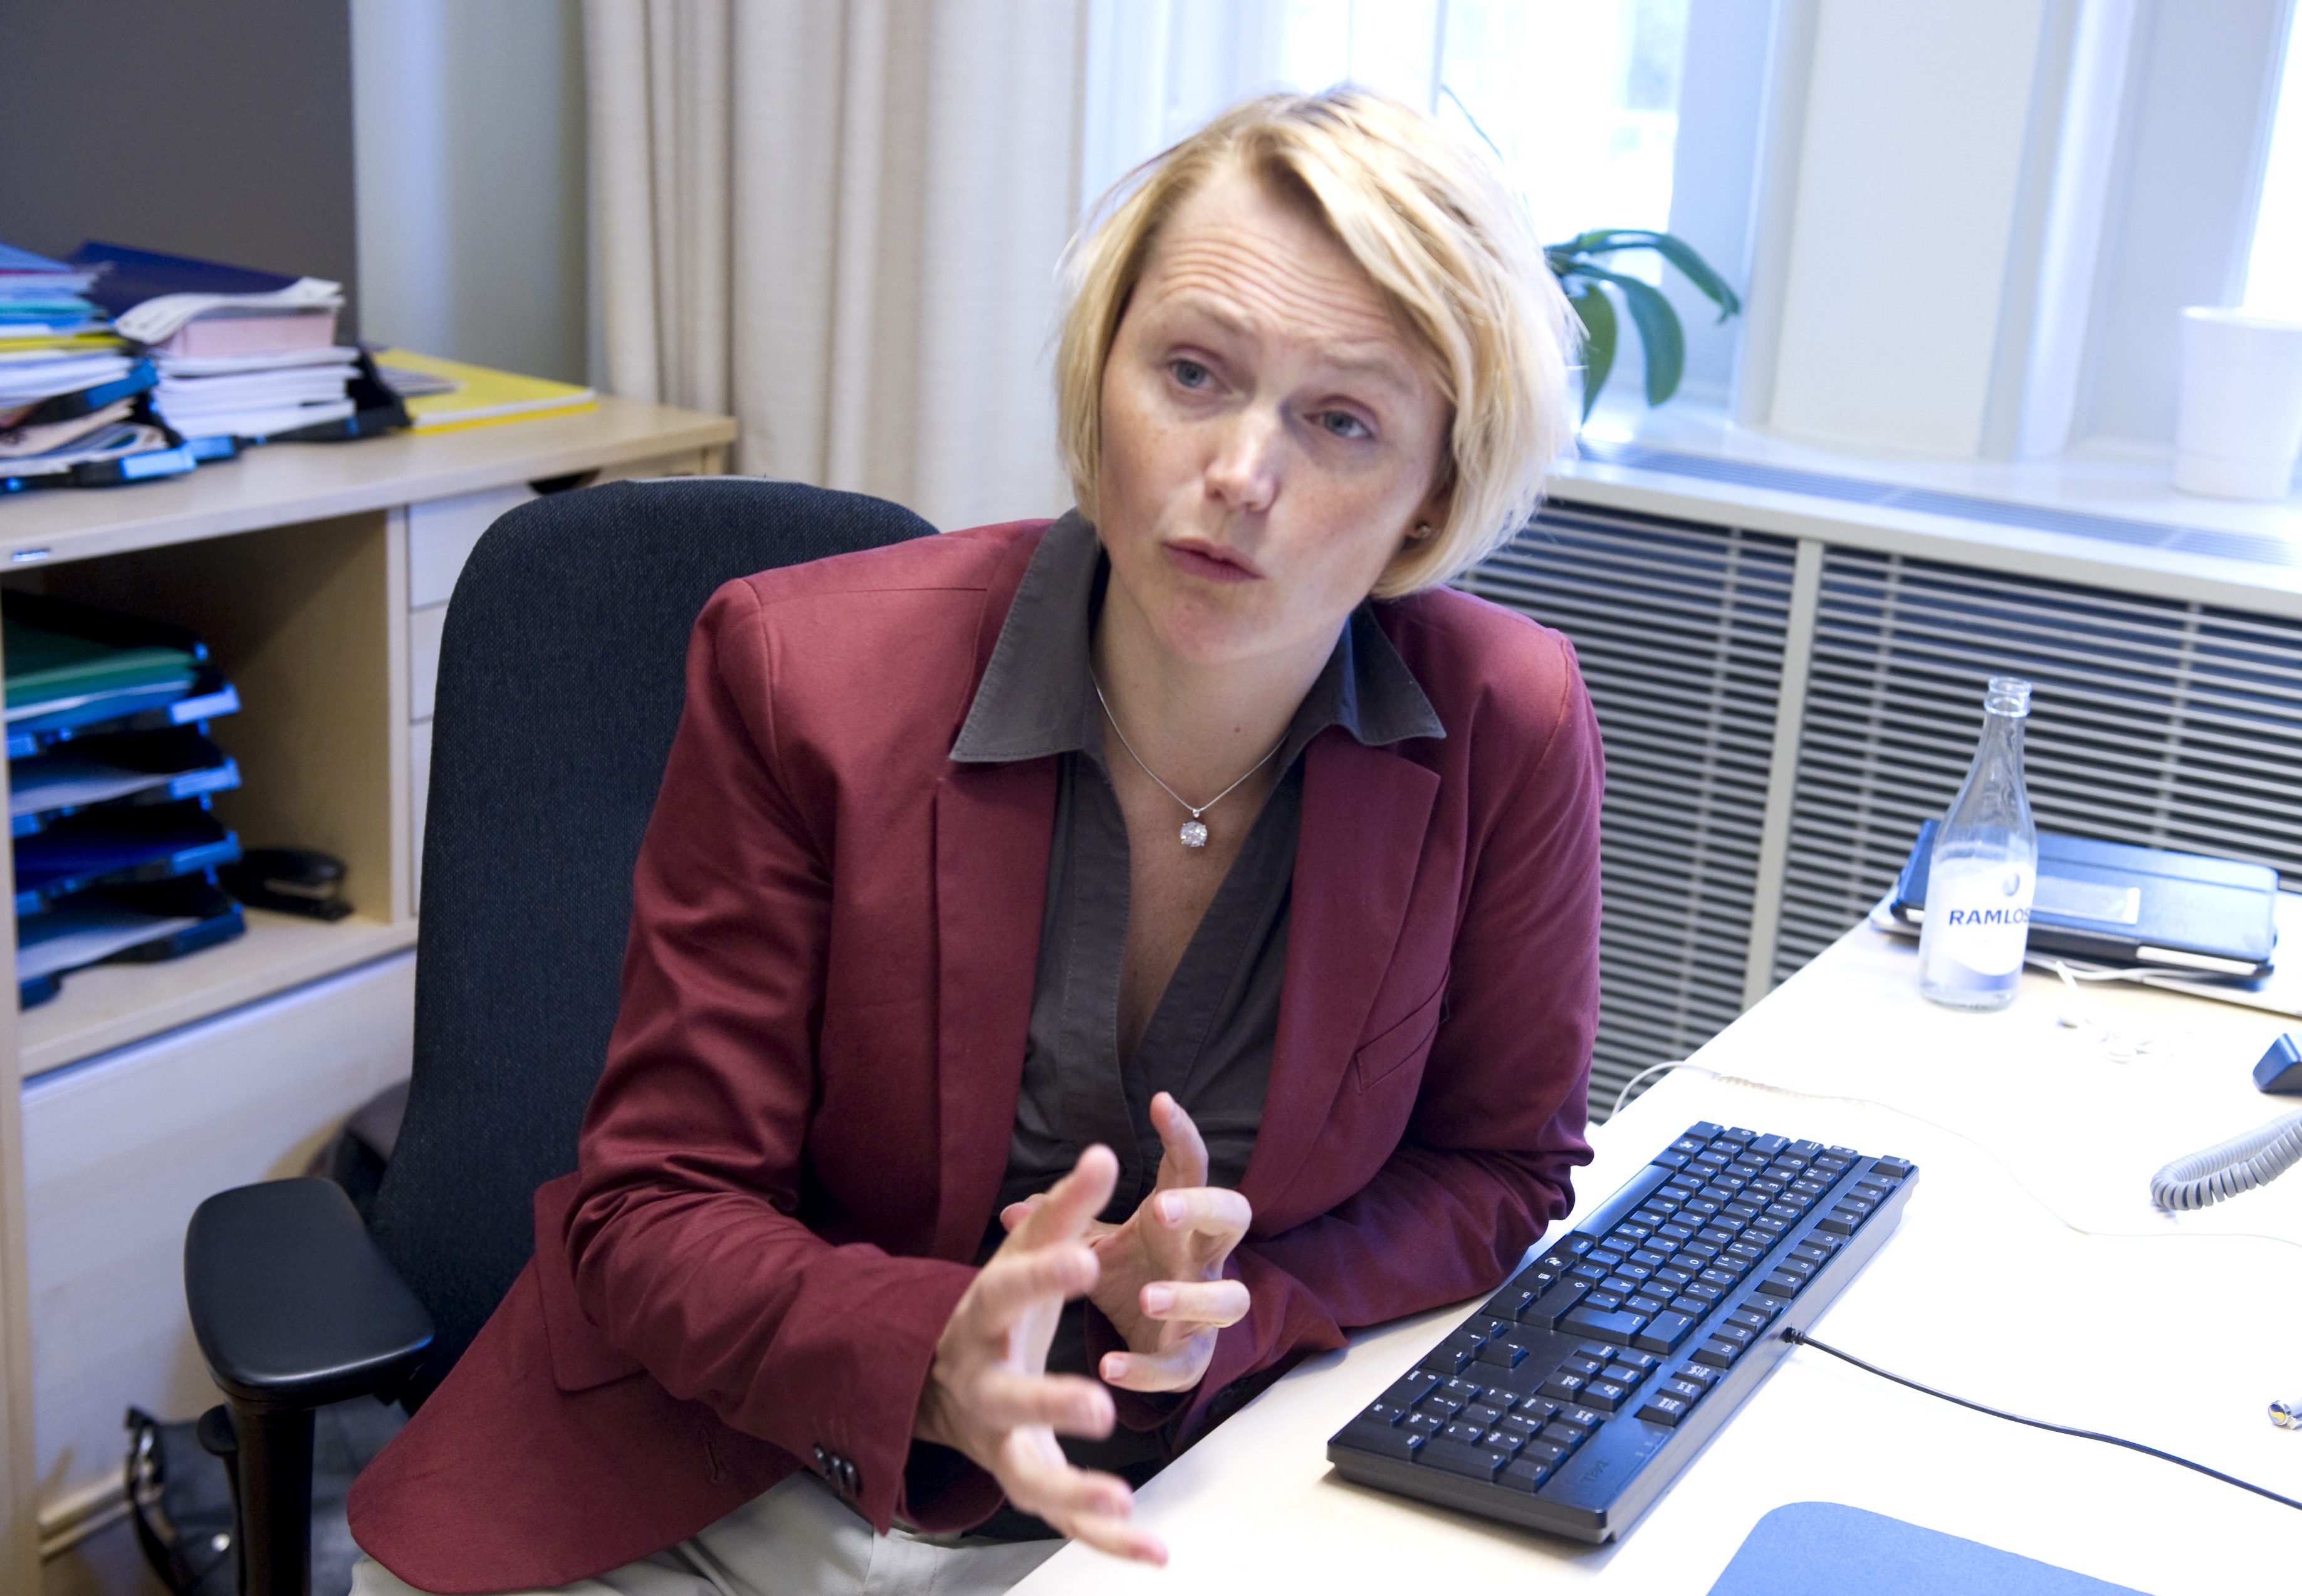 It-minister Anna-Karin Hatt, tillika andre vice ordförande i partiet, har varit ute och sågat delar av idéprogrammet.